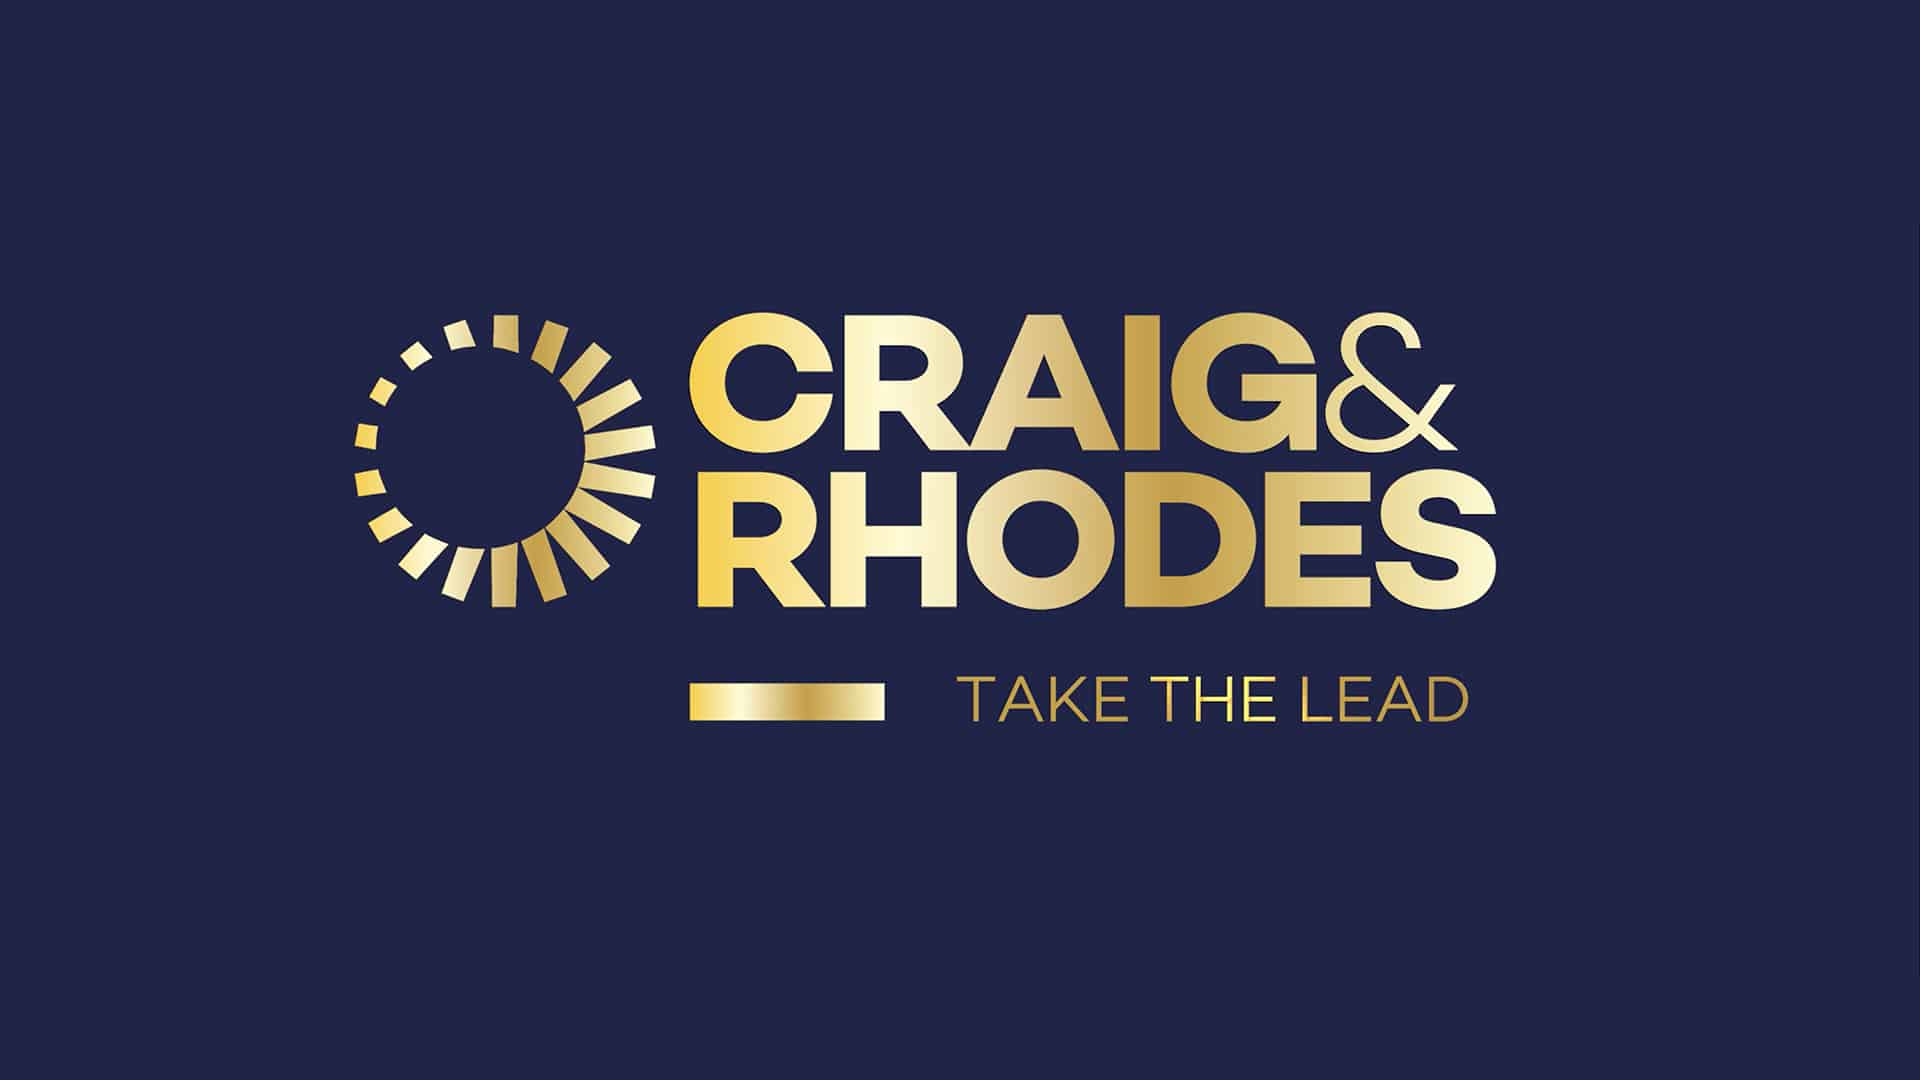 Craig & Rhodes